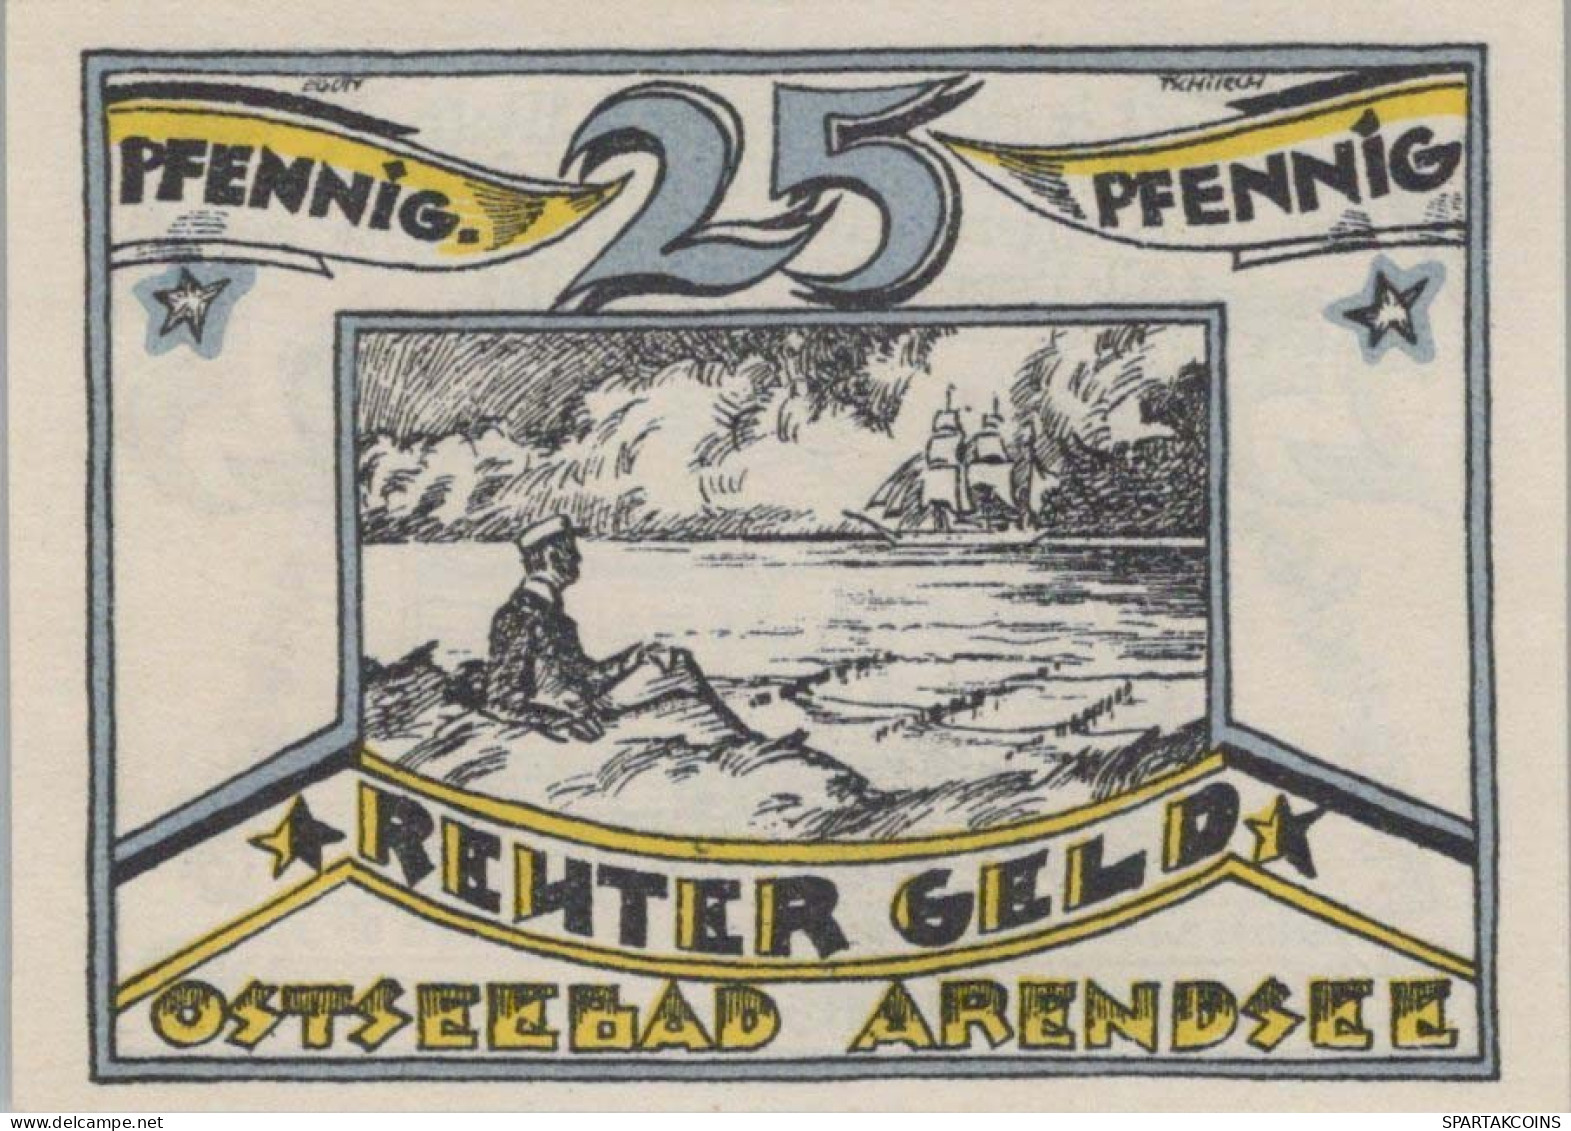 25 PFENNIG 1922 ARENDSEE AN DER OSTSEE Mecklenburg-Schwerin DEUTSCHLAND #PJ113 - [11] Local Banknote Issues